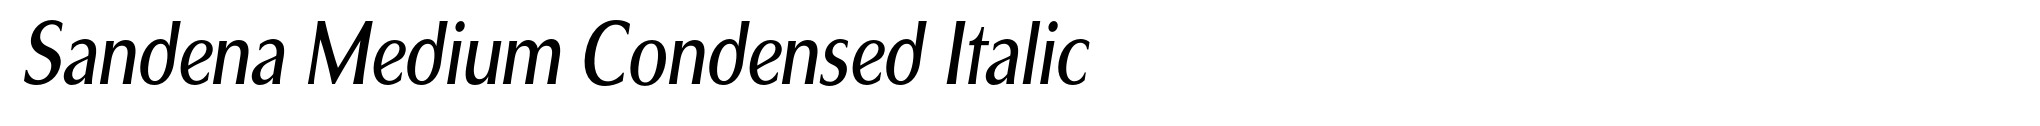 Sandena Medium Condensed Italic image